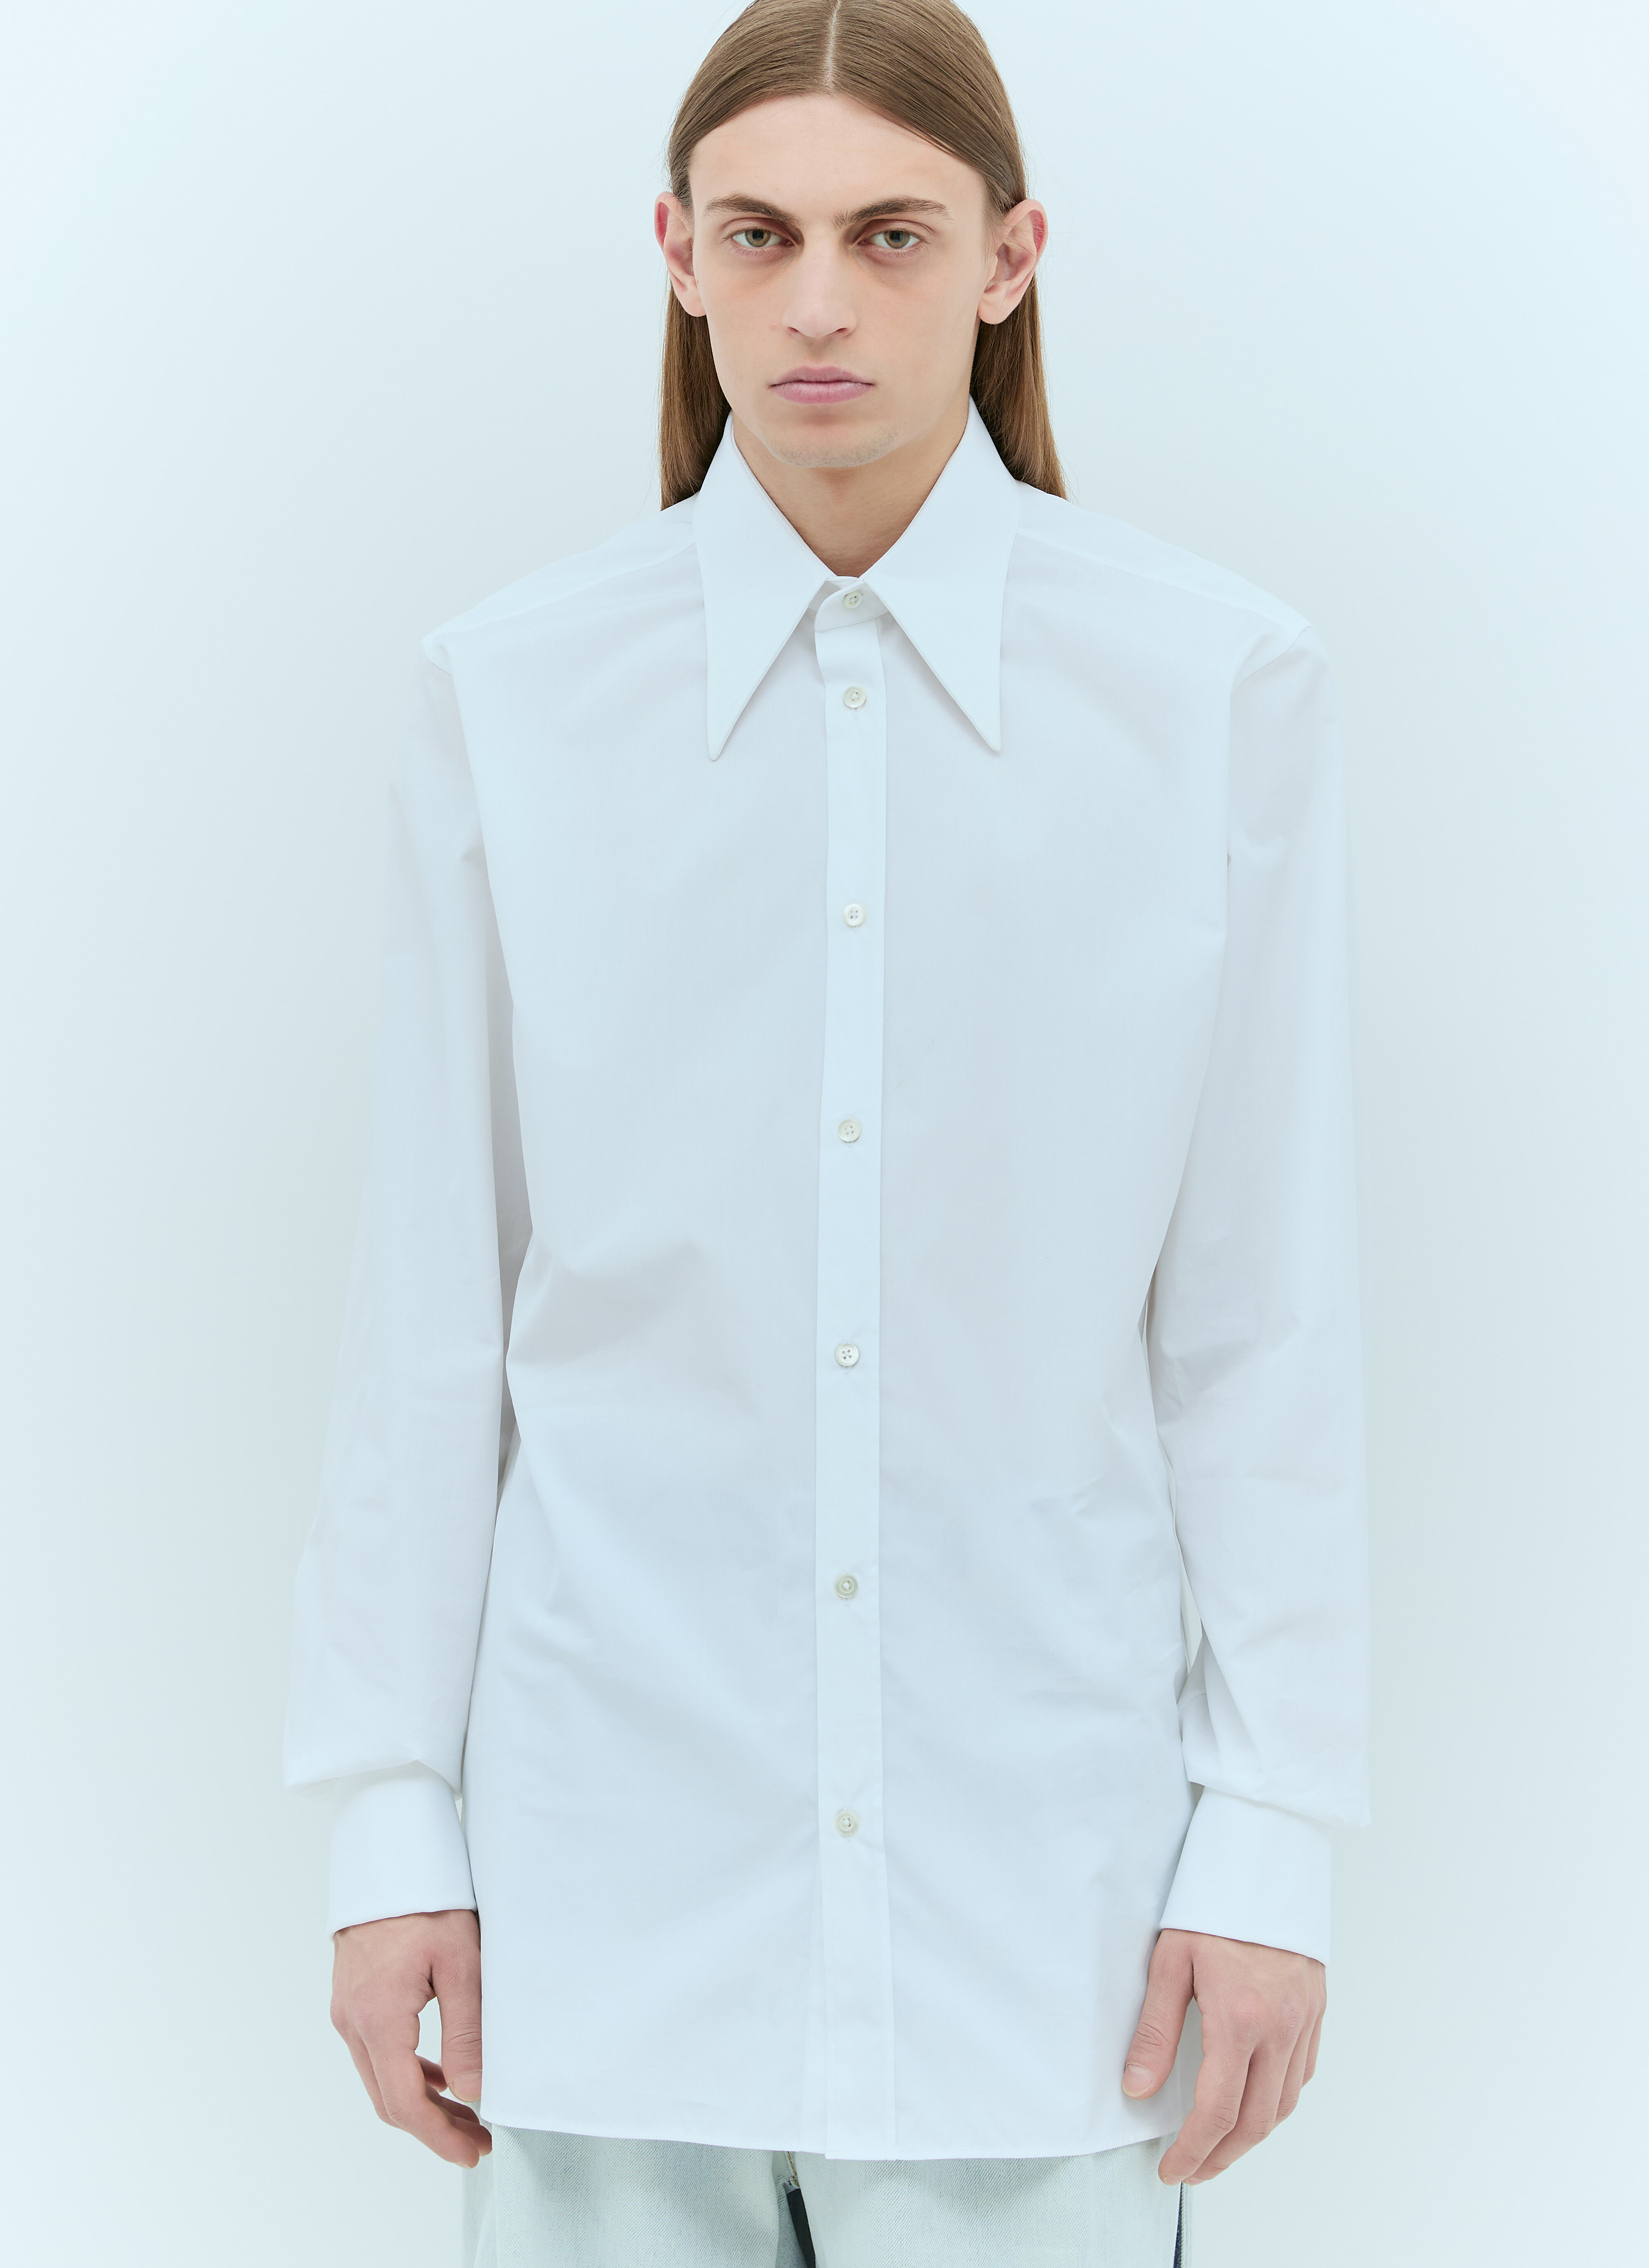 Acne Studios 经典府绸衬衫  White acn0157009